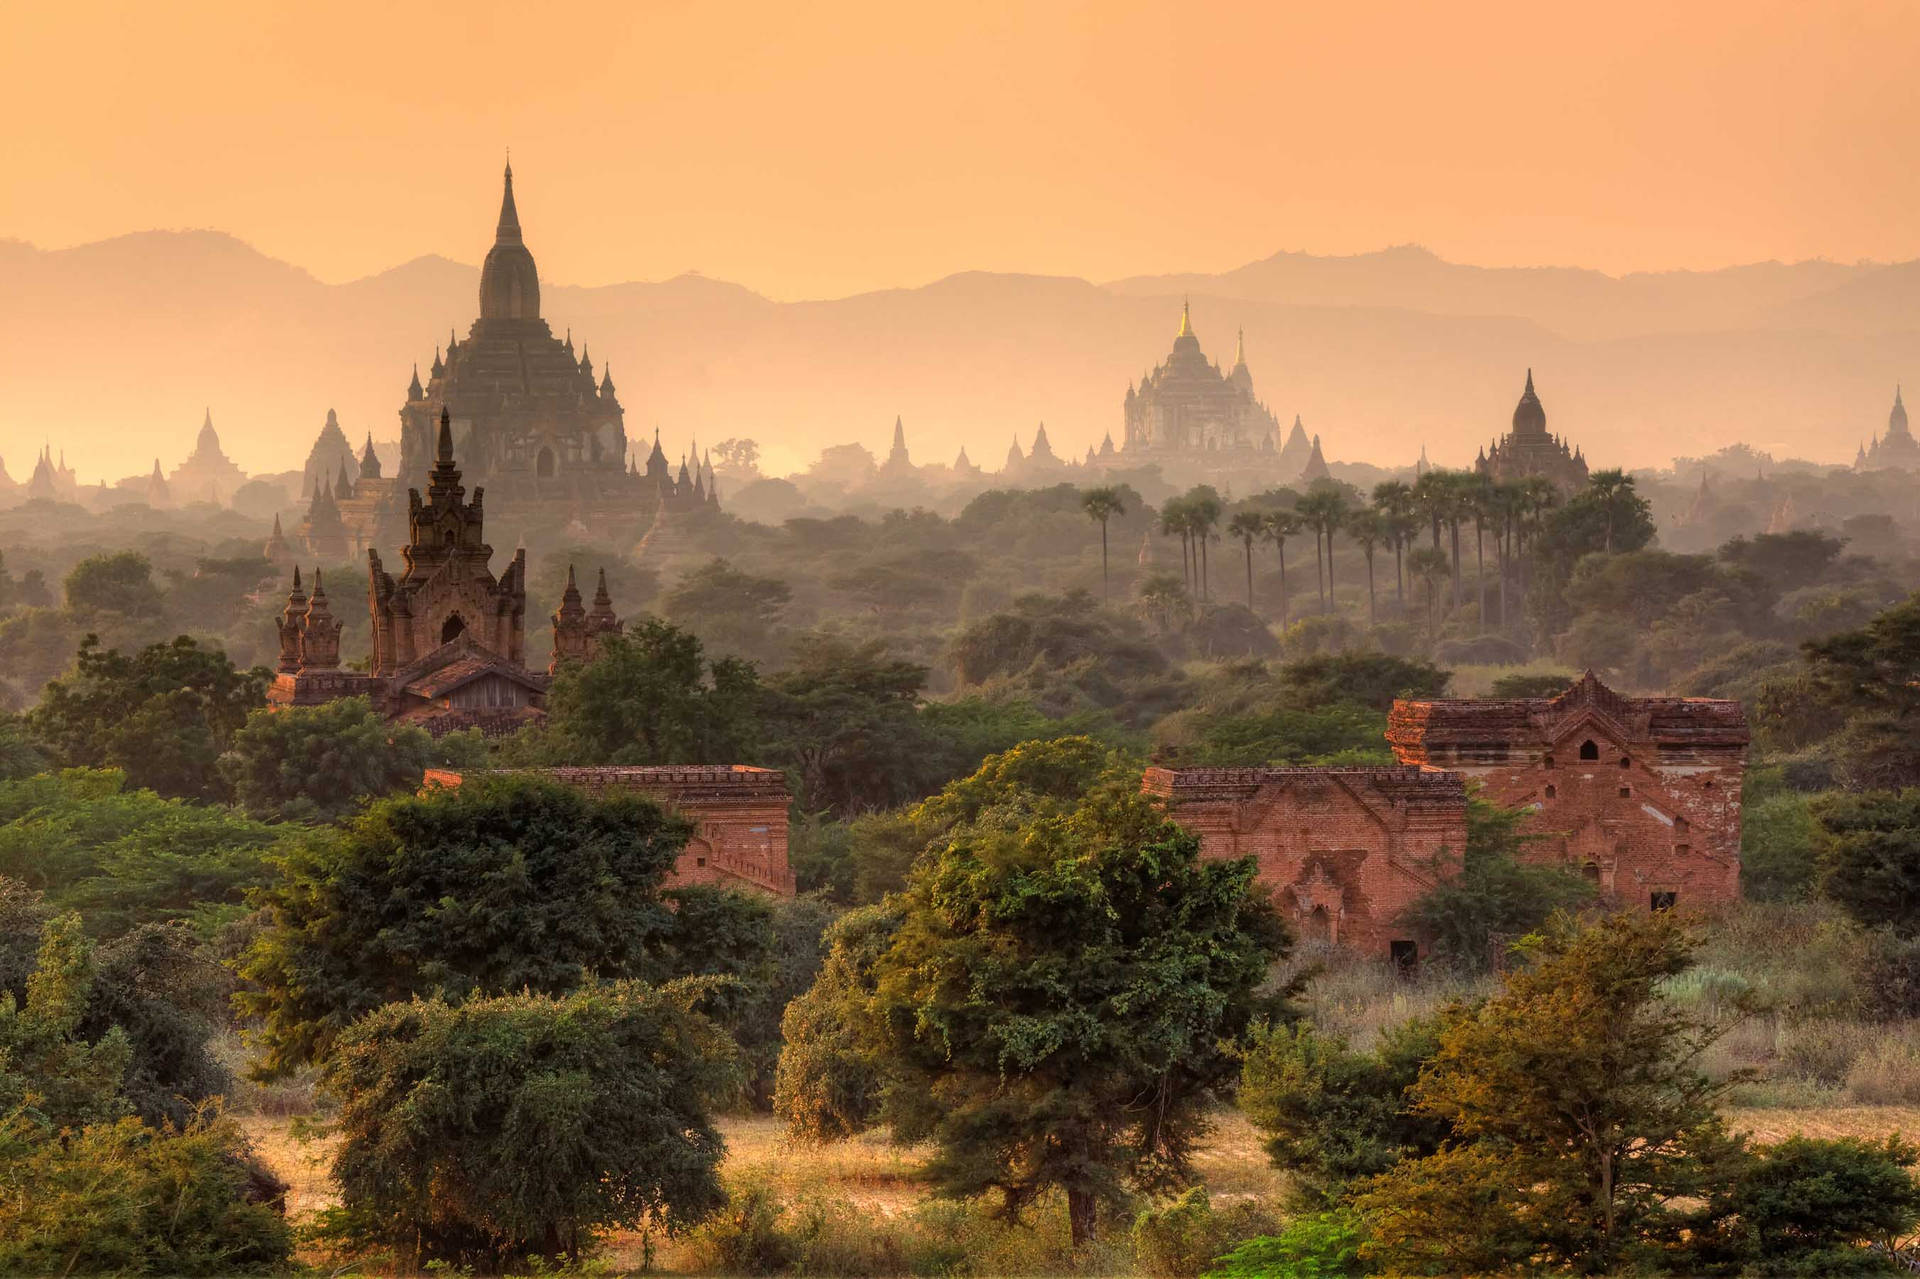 Oldest Pagodas From Burma